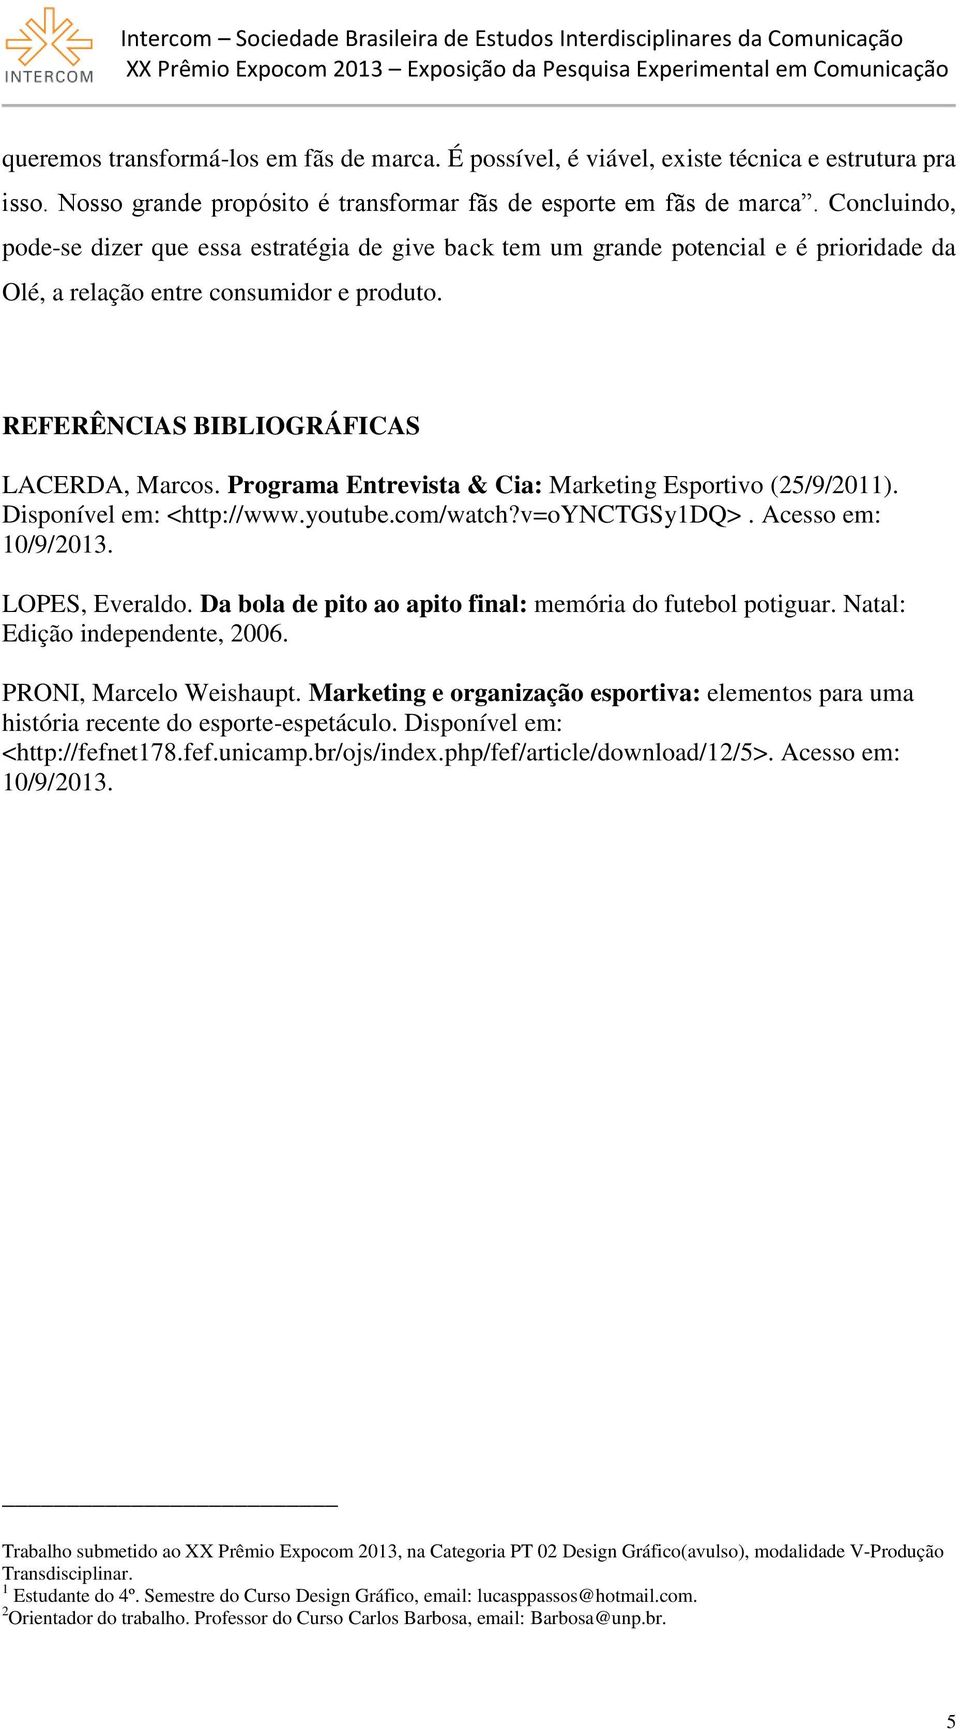 Programa Entrevista & Cia: Marketing Esportivo (25/9/2011). Disponível em: <http://www.youtube.com/watch?v=oynctgsy1dq>. Acesso em: 10/9/2013. LOPES, Everaldo.